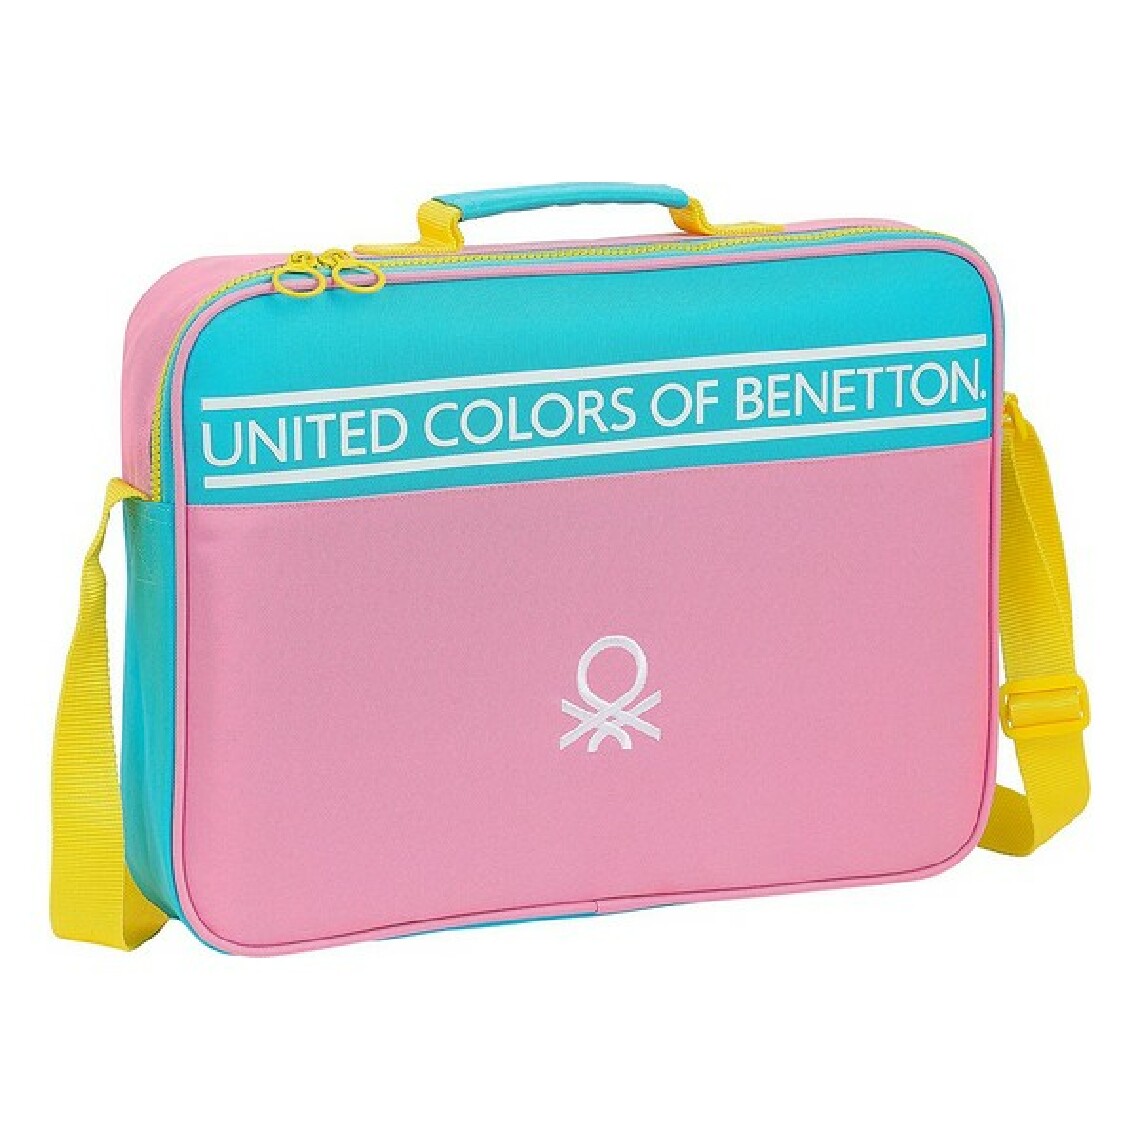 Benetton - Porte documents Benetton Color Block Jaune Rose Turquoise (6 L) - Accessoires Bureau